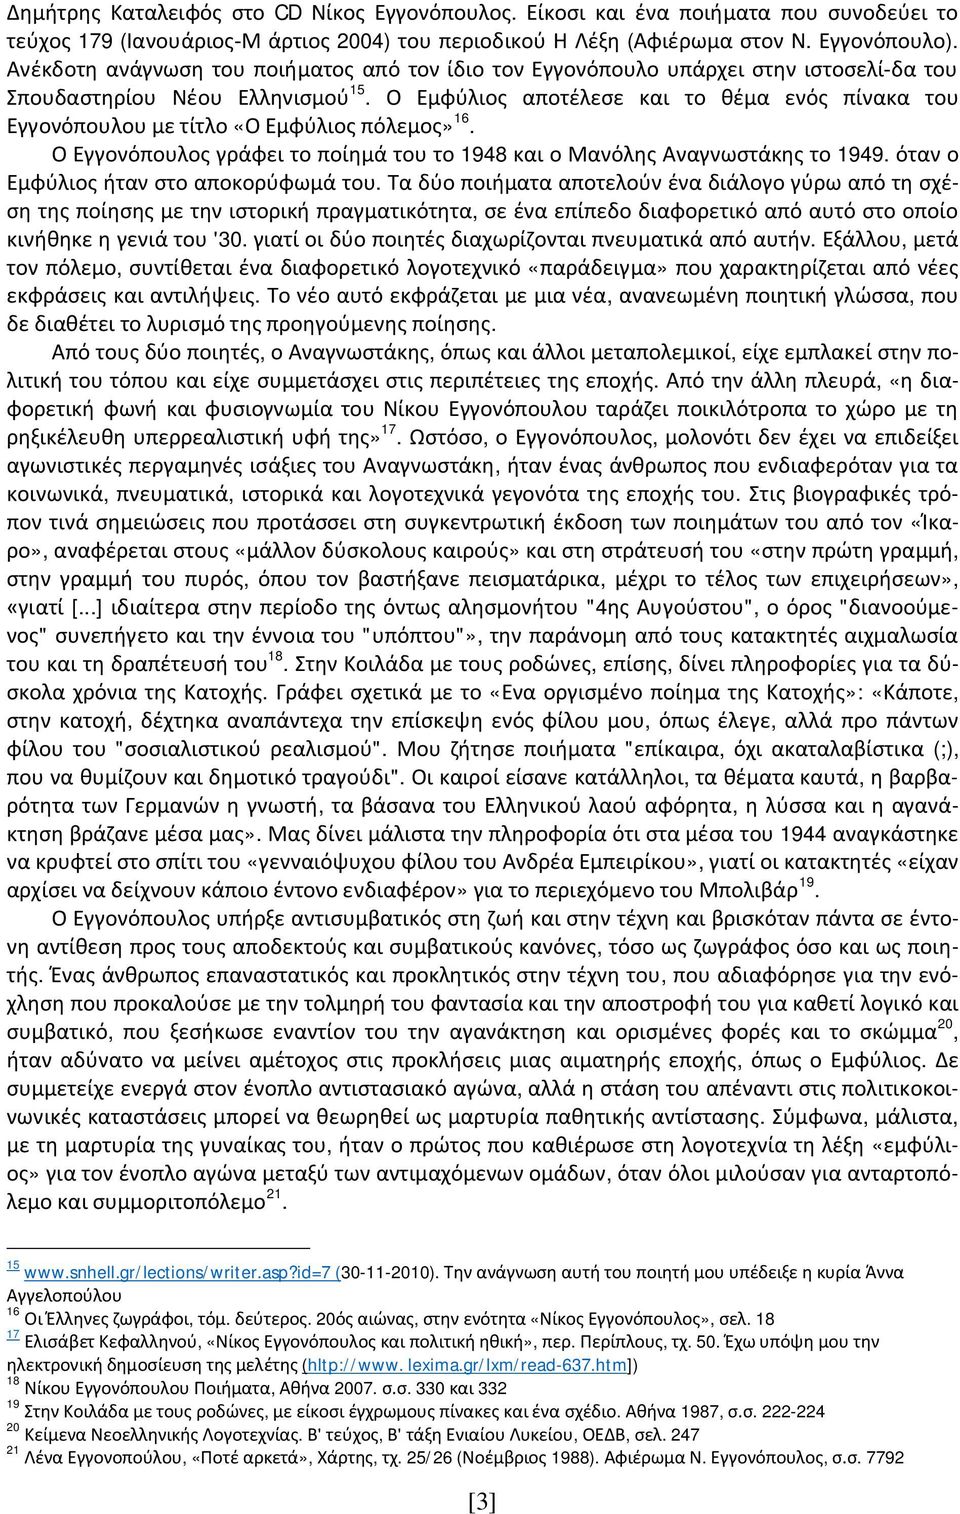 Ο Εμφύλιος αποτέλεσε και το θέμα ενός πίνακα του Εγγονόπουλου με τίτλο «Ο Εμφύλιος πόλεμος» 16. Ο Εγγονόπουλος γράφει το ποίημά του το 1948 και ο Μανόλης Αναγνωστάκης το 1949.